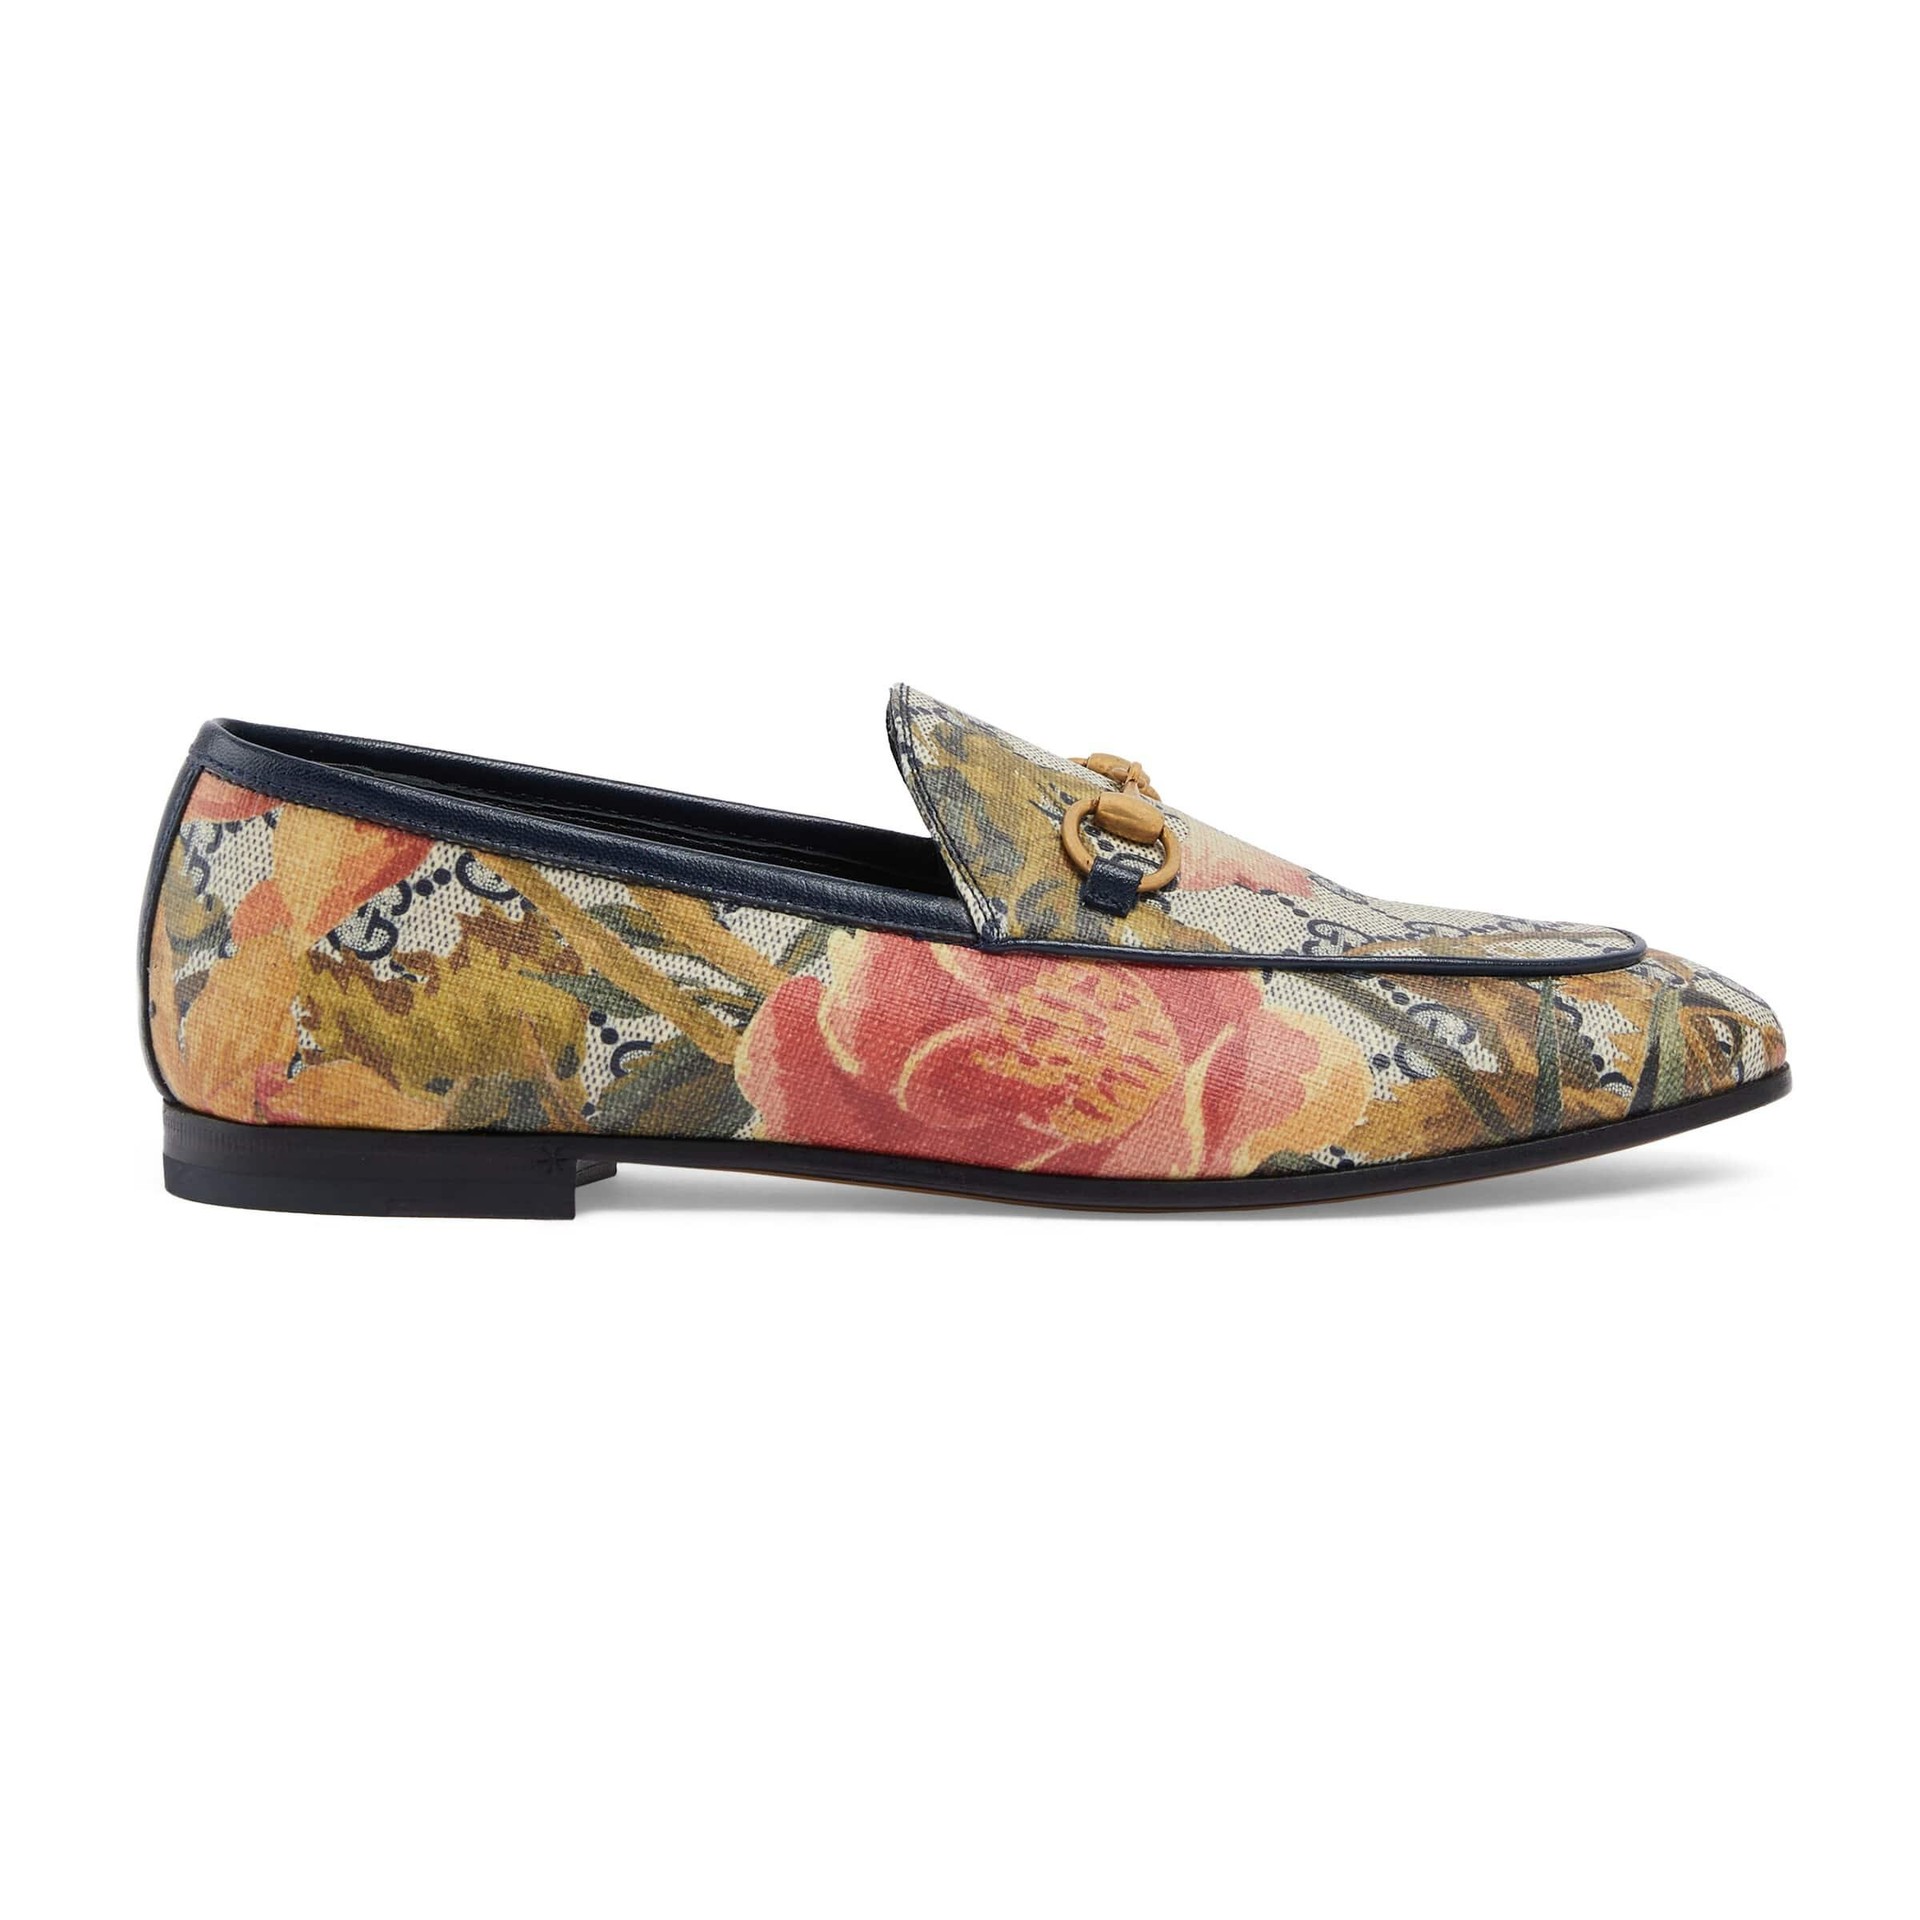 Gucci - Jordaan Flora Loafers - Multicolor